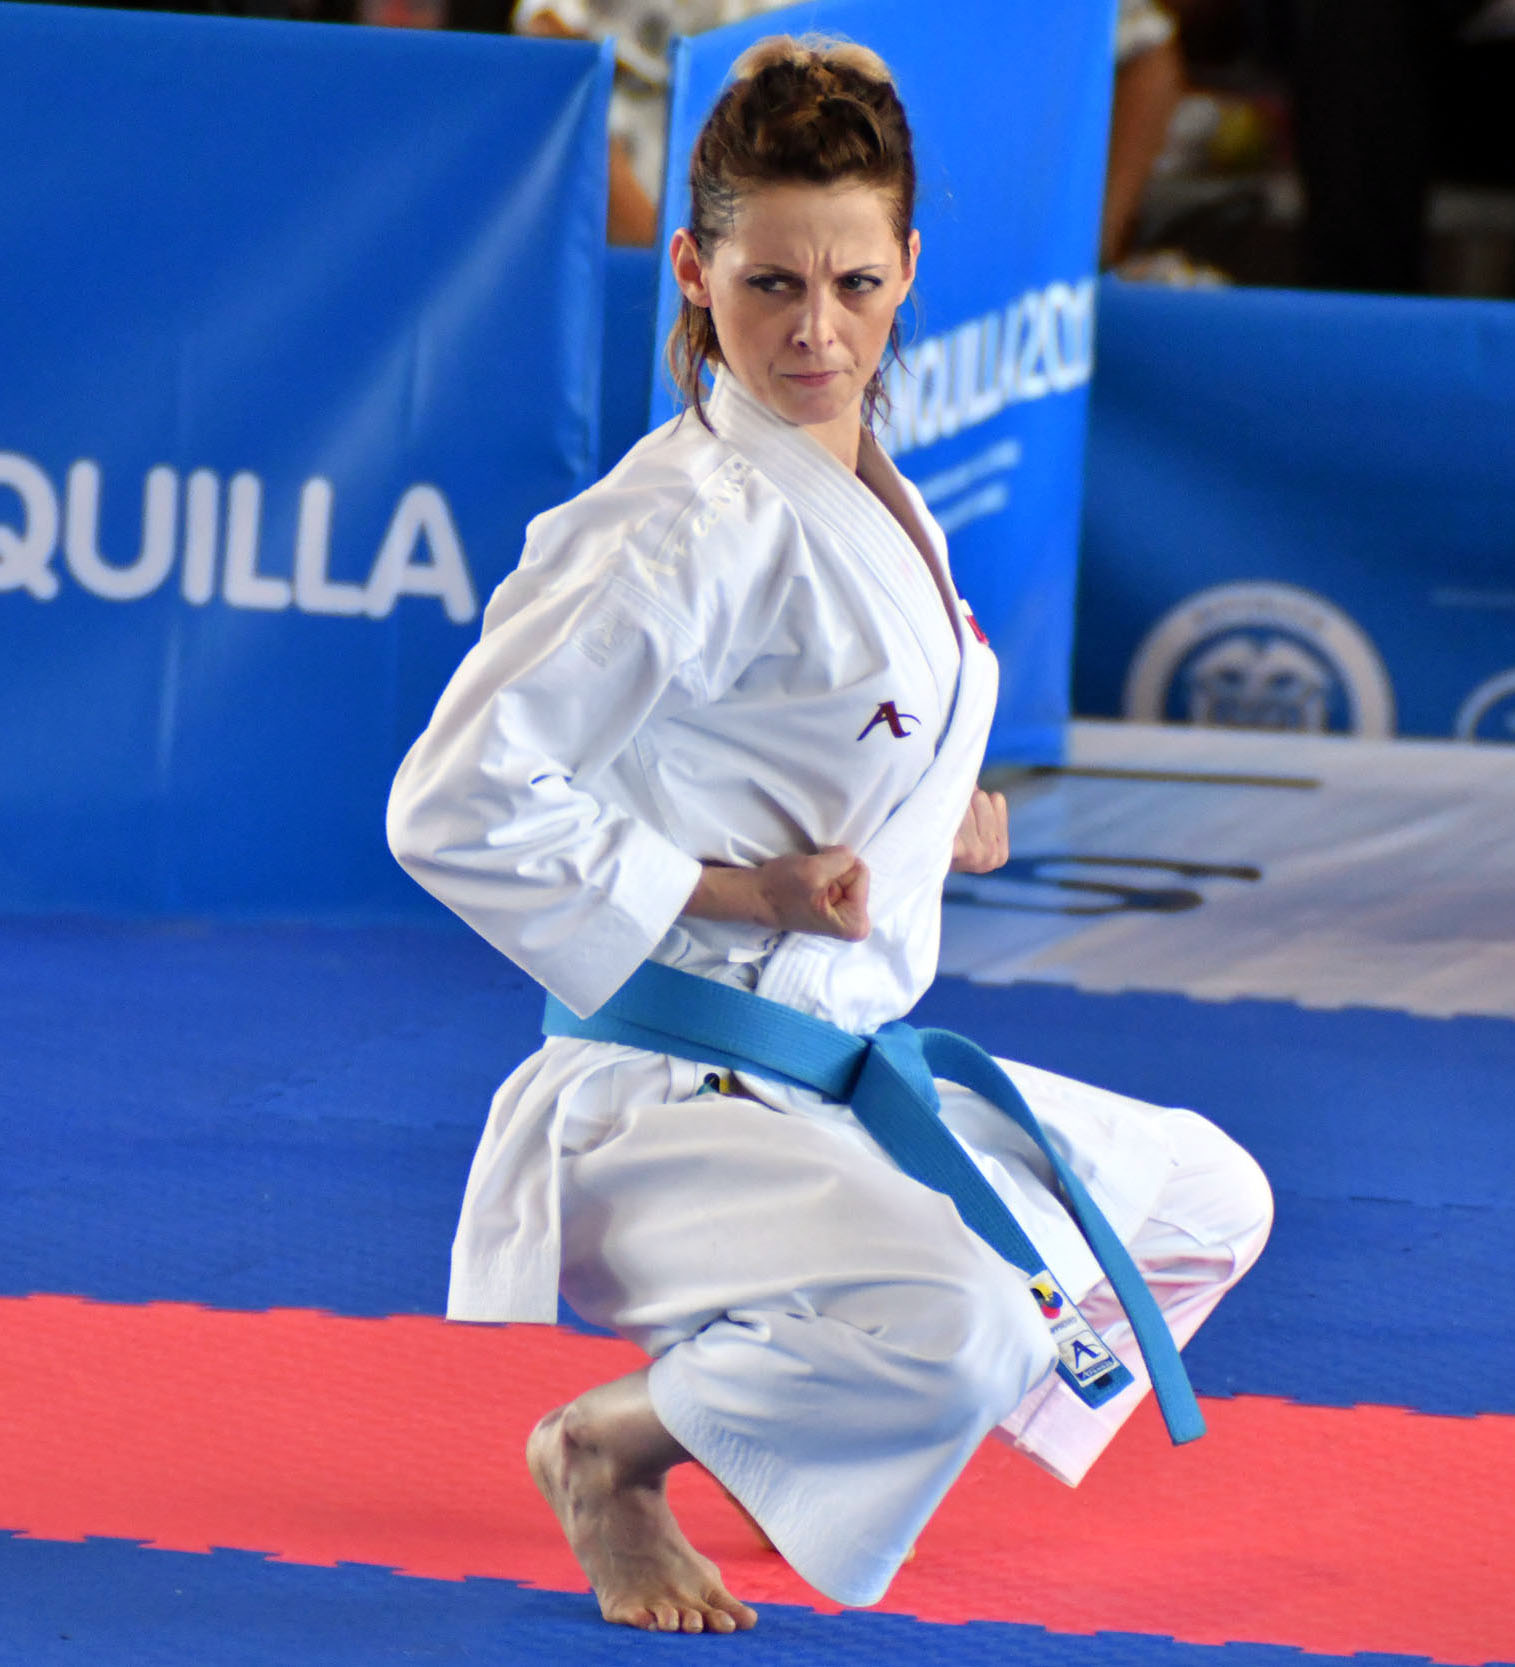 Manolitoenelplay:: María Dimitrova no competirá en los Juegos de Chile